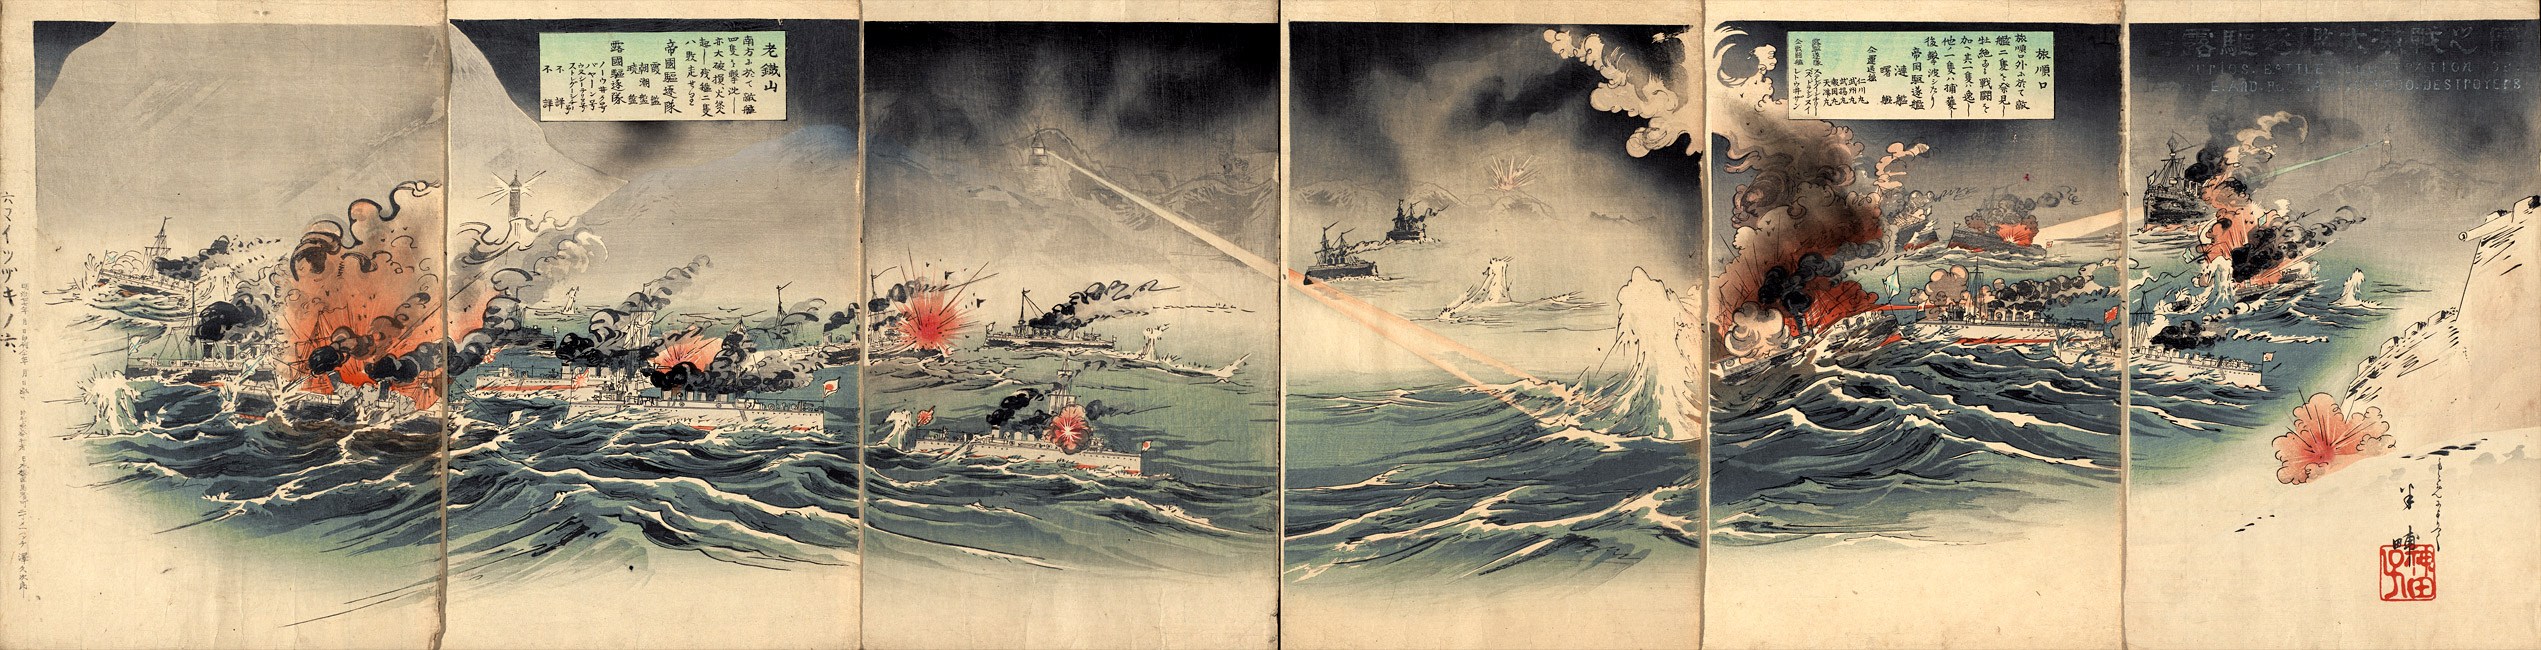 A Port Arthur elleni támadás egy korabeli japán metszeten.